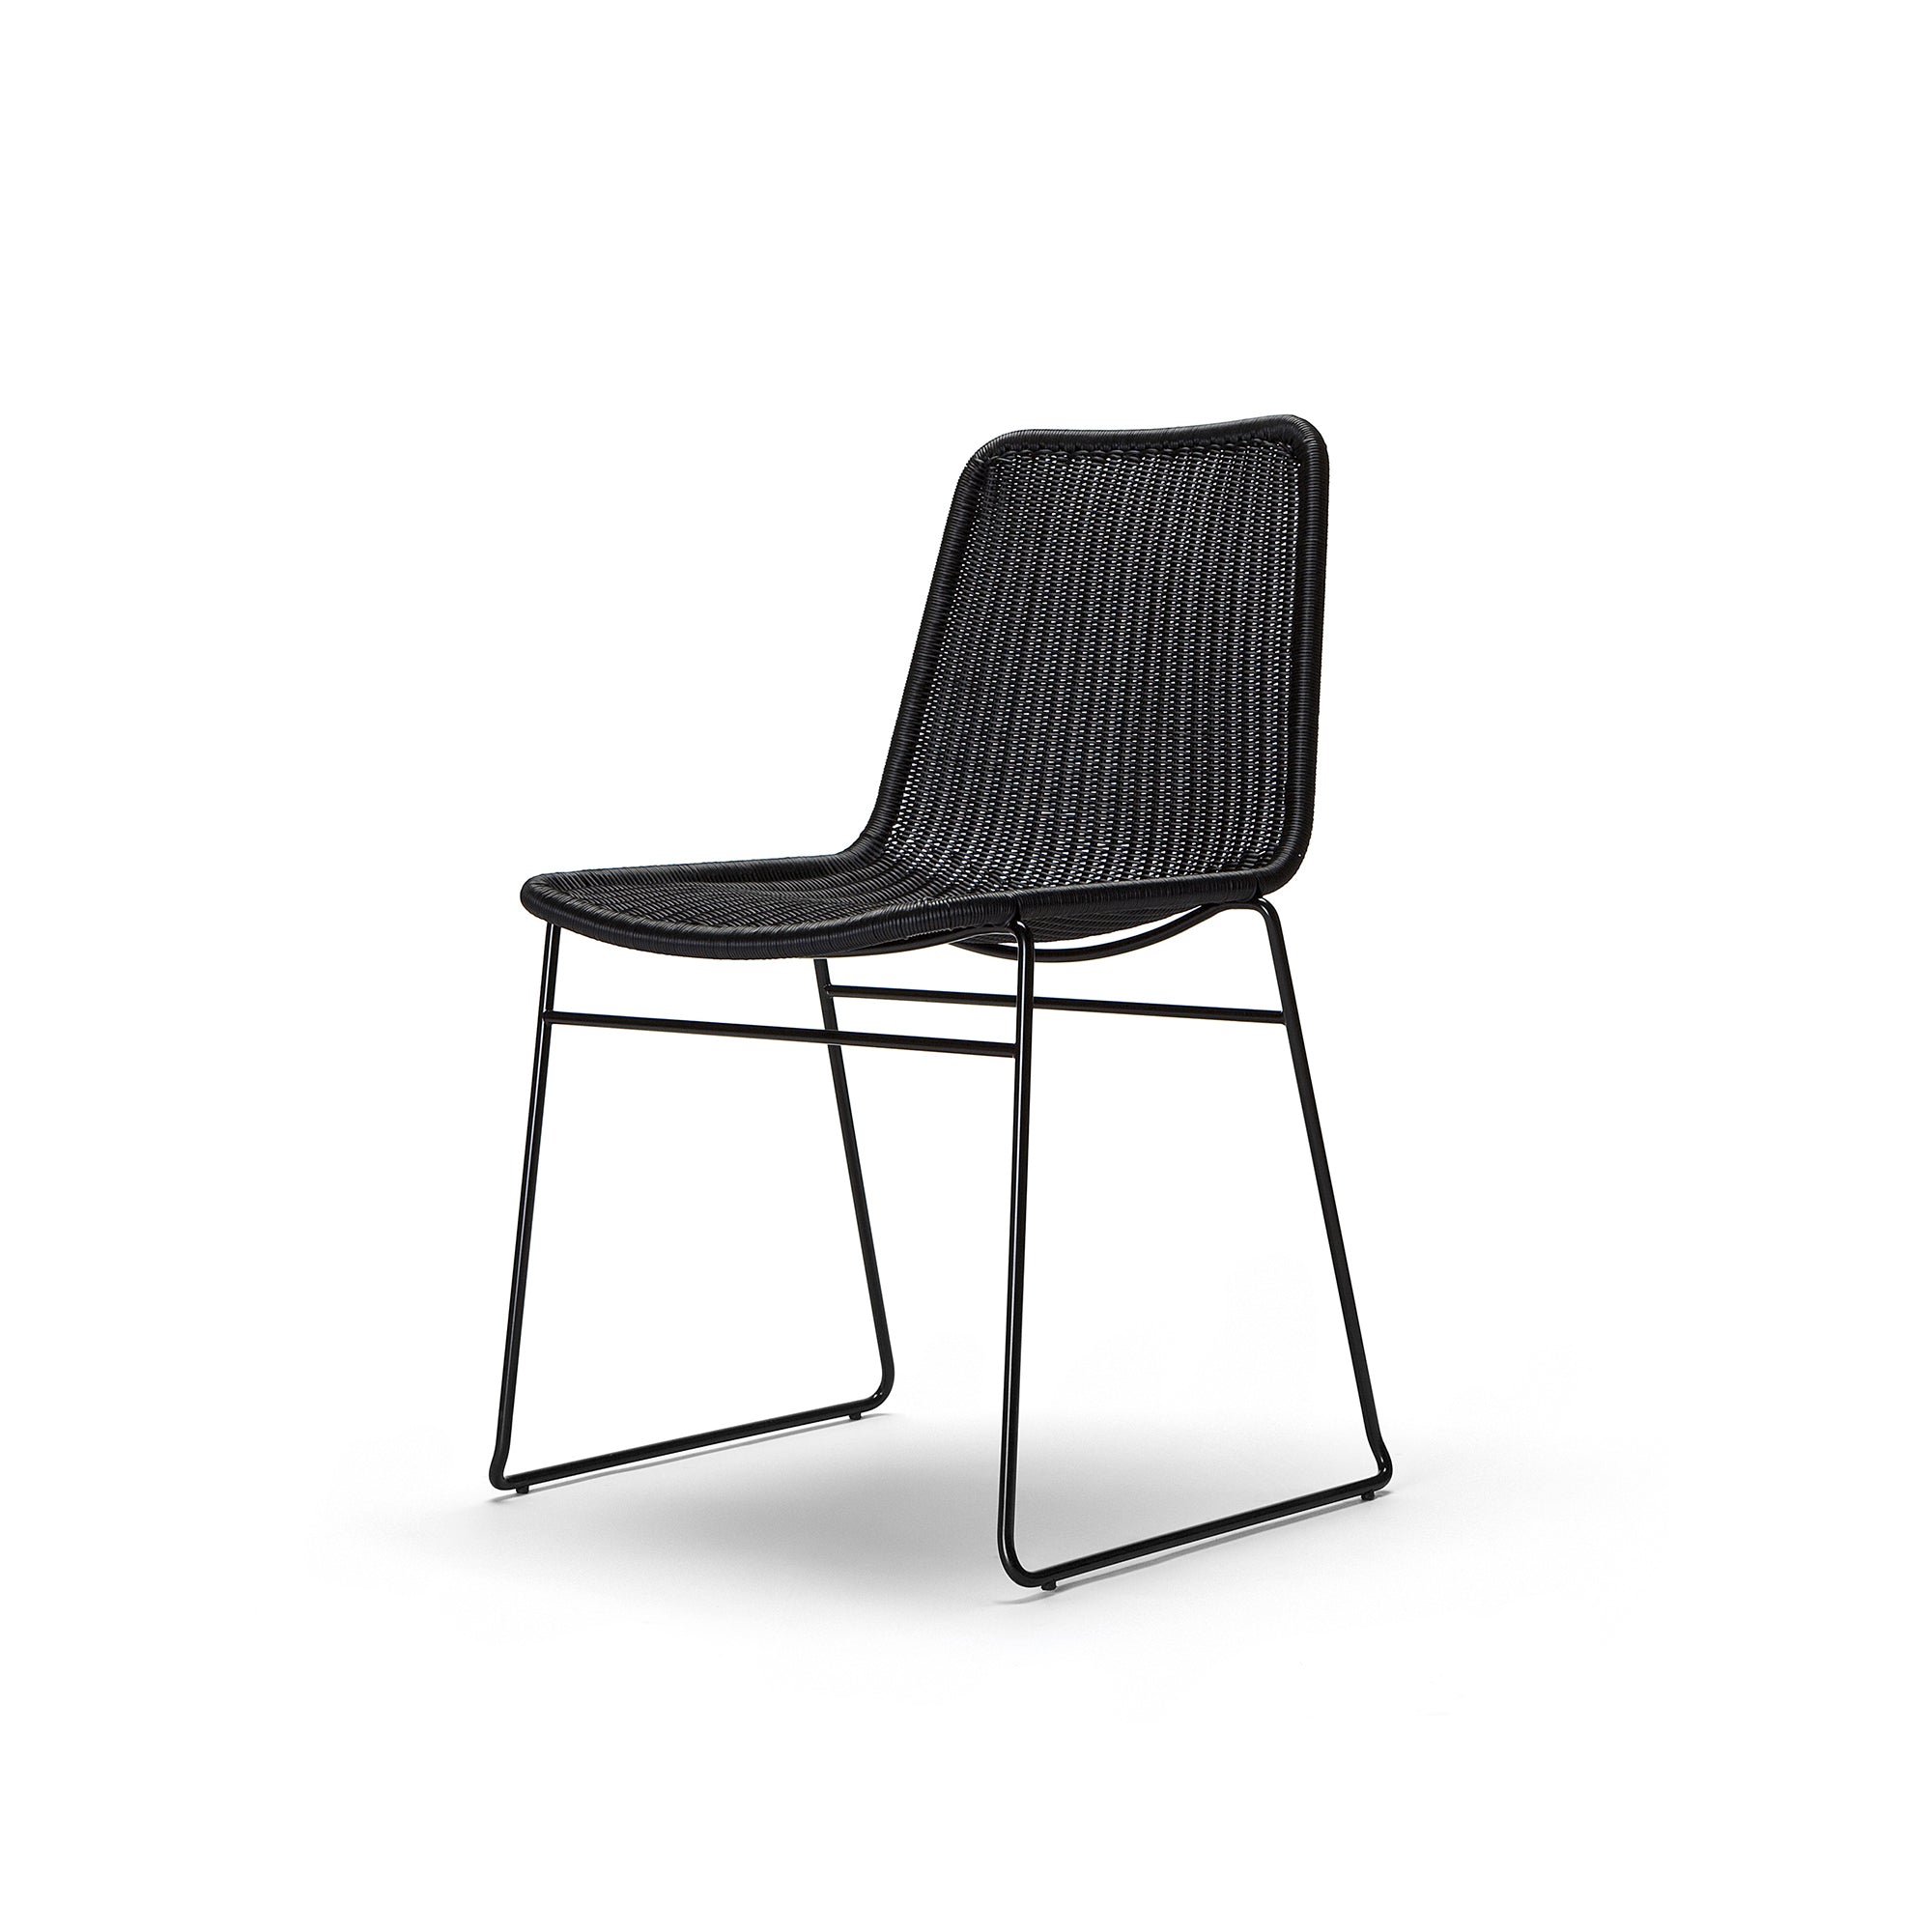 C607 Chair Black Outdoor Indoor